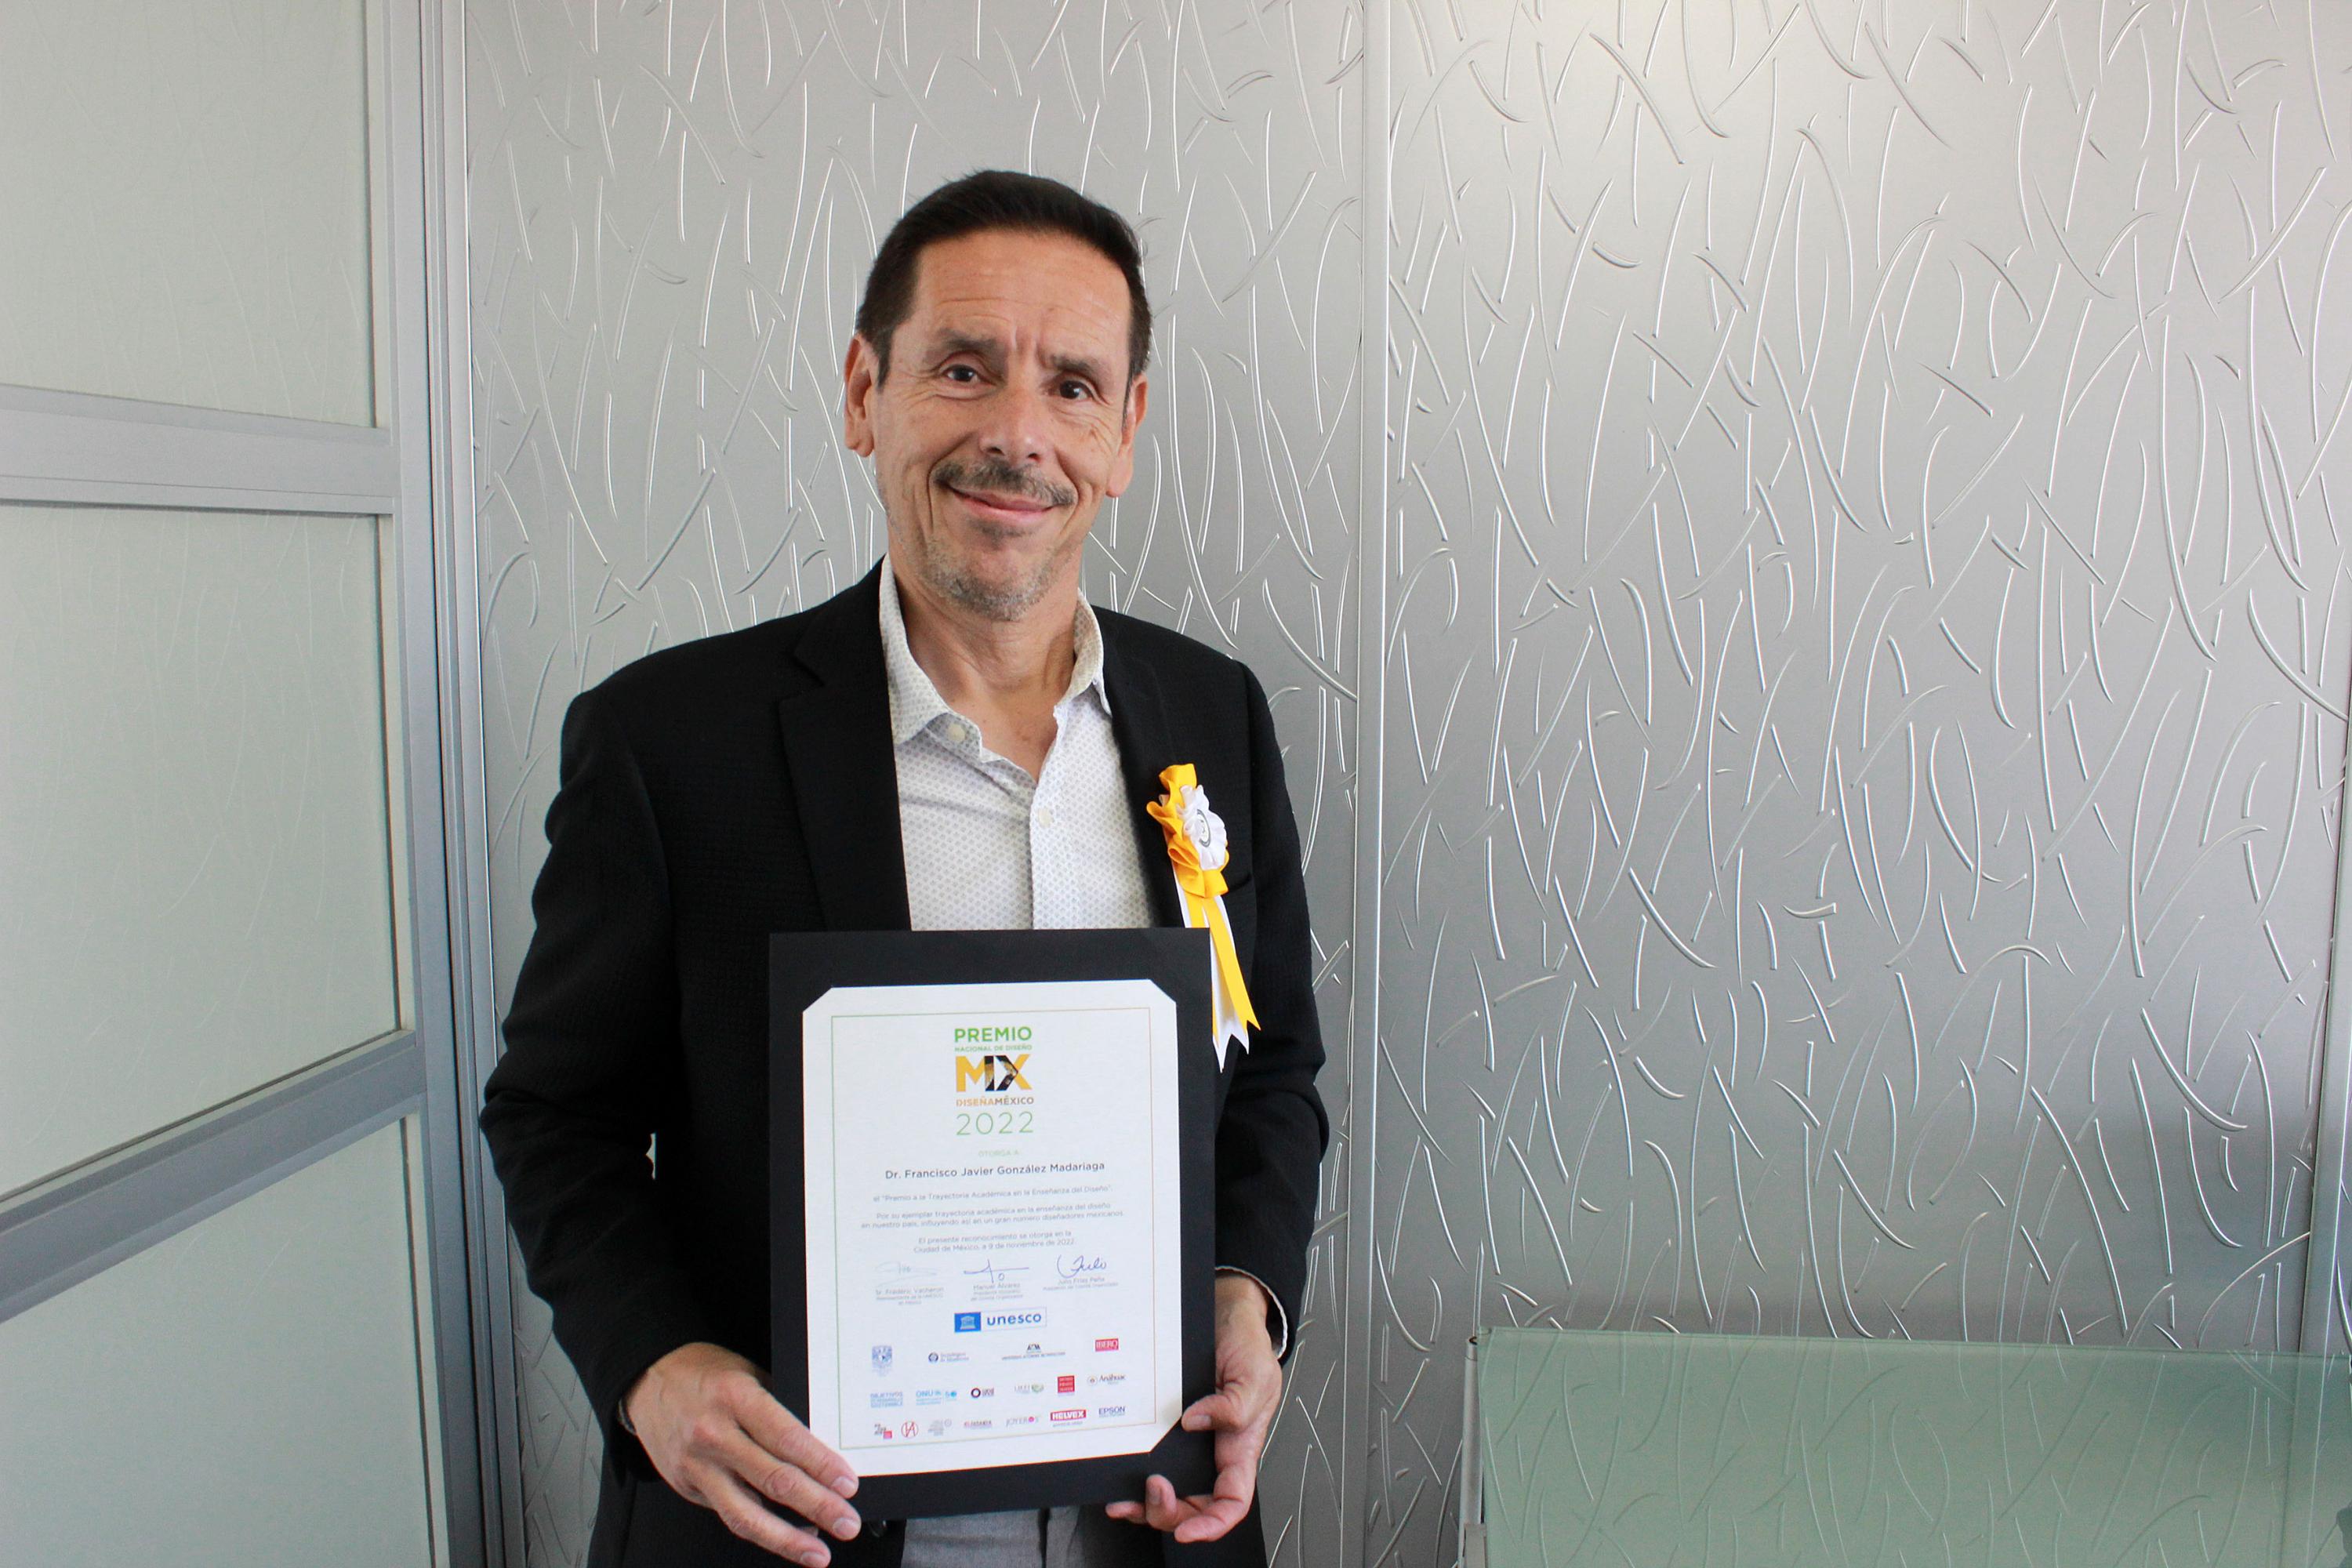 El doctor Francisco Javier González Madariaga fue reconocido con este galardón impulsado por la UNESCO 